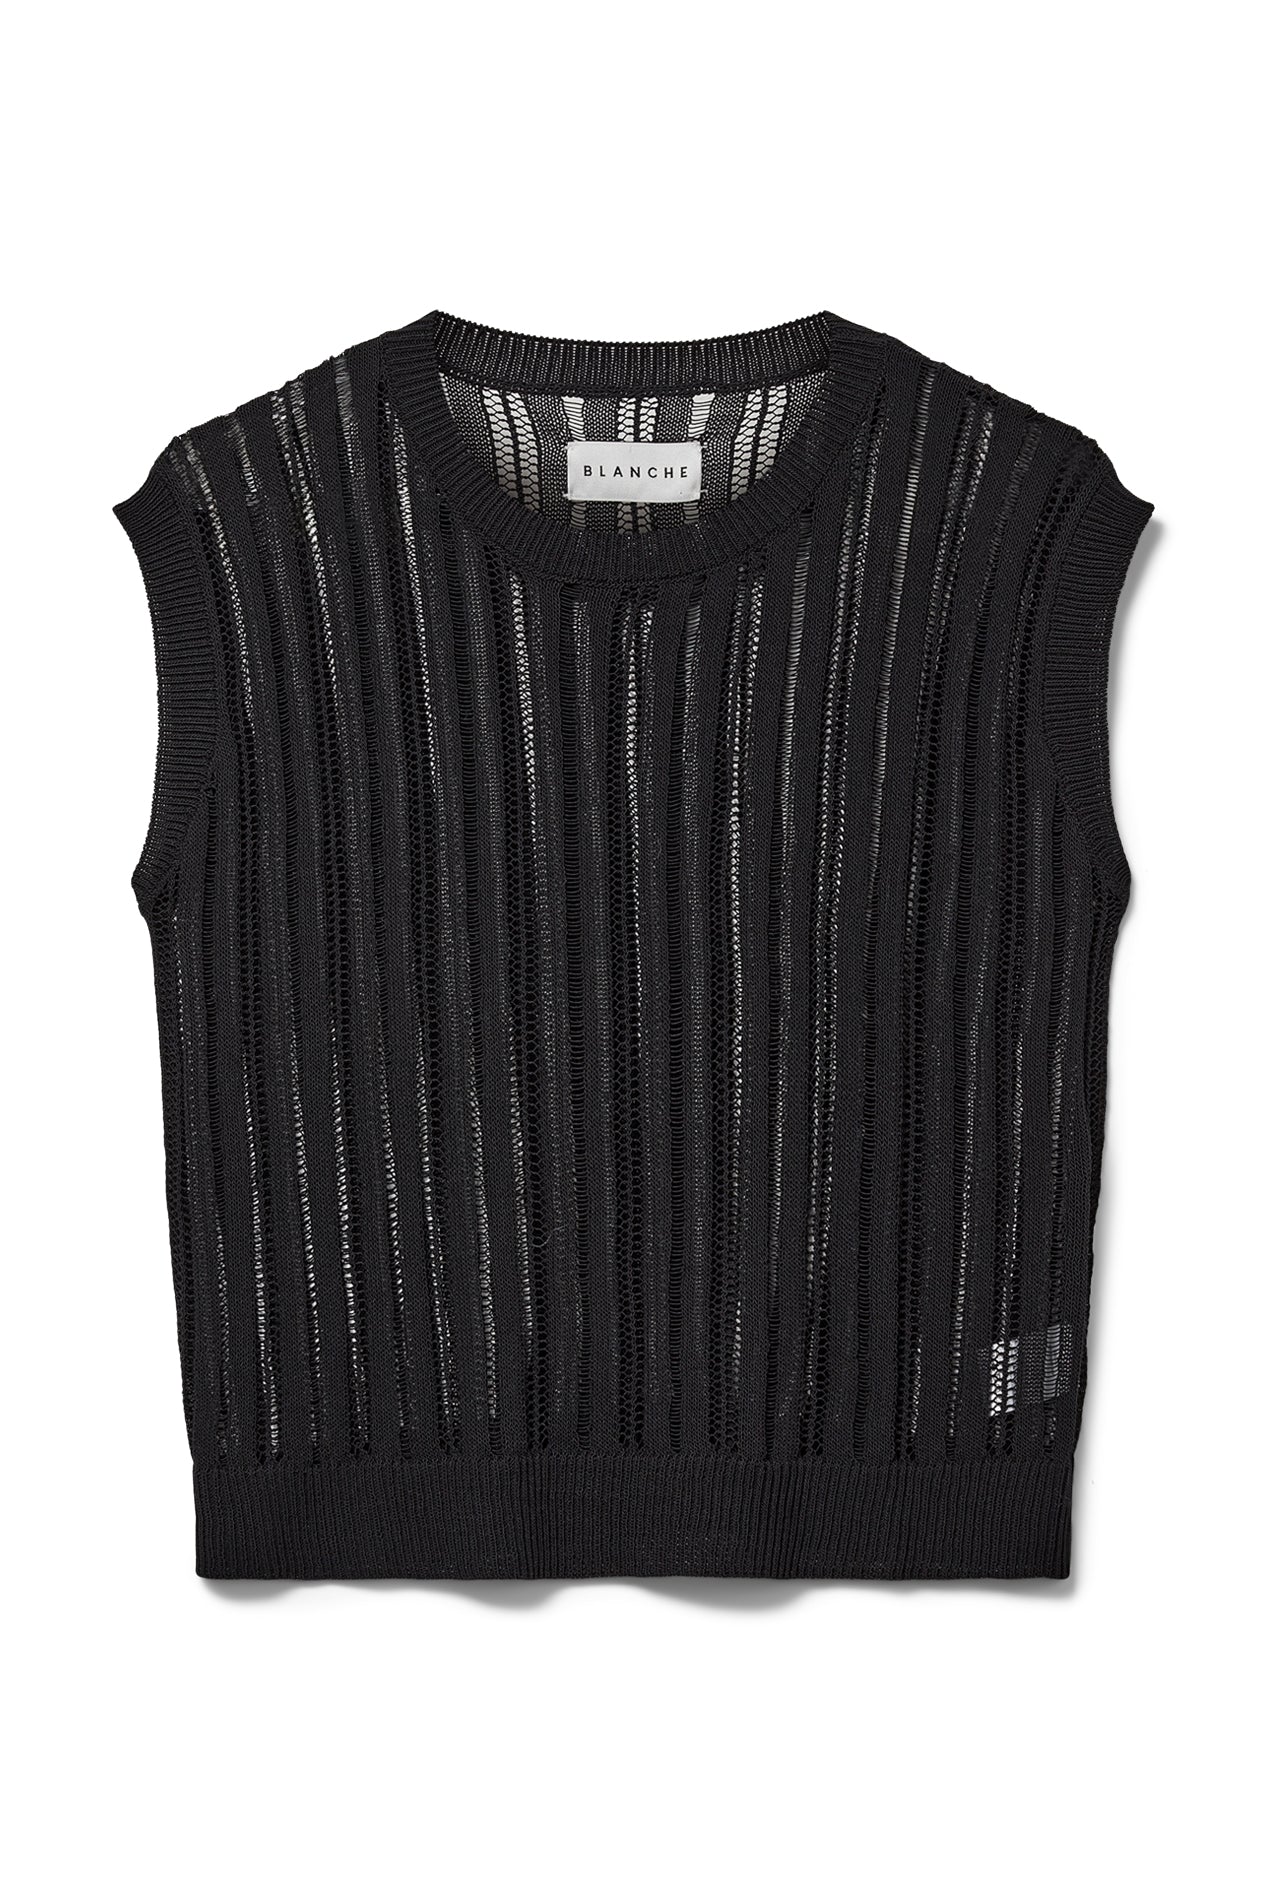 BLANCHE Copenhagen Tortue-BL Vest Knitwear 99 Black